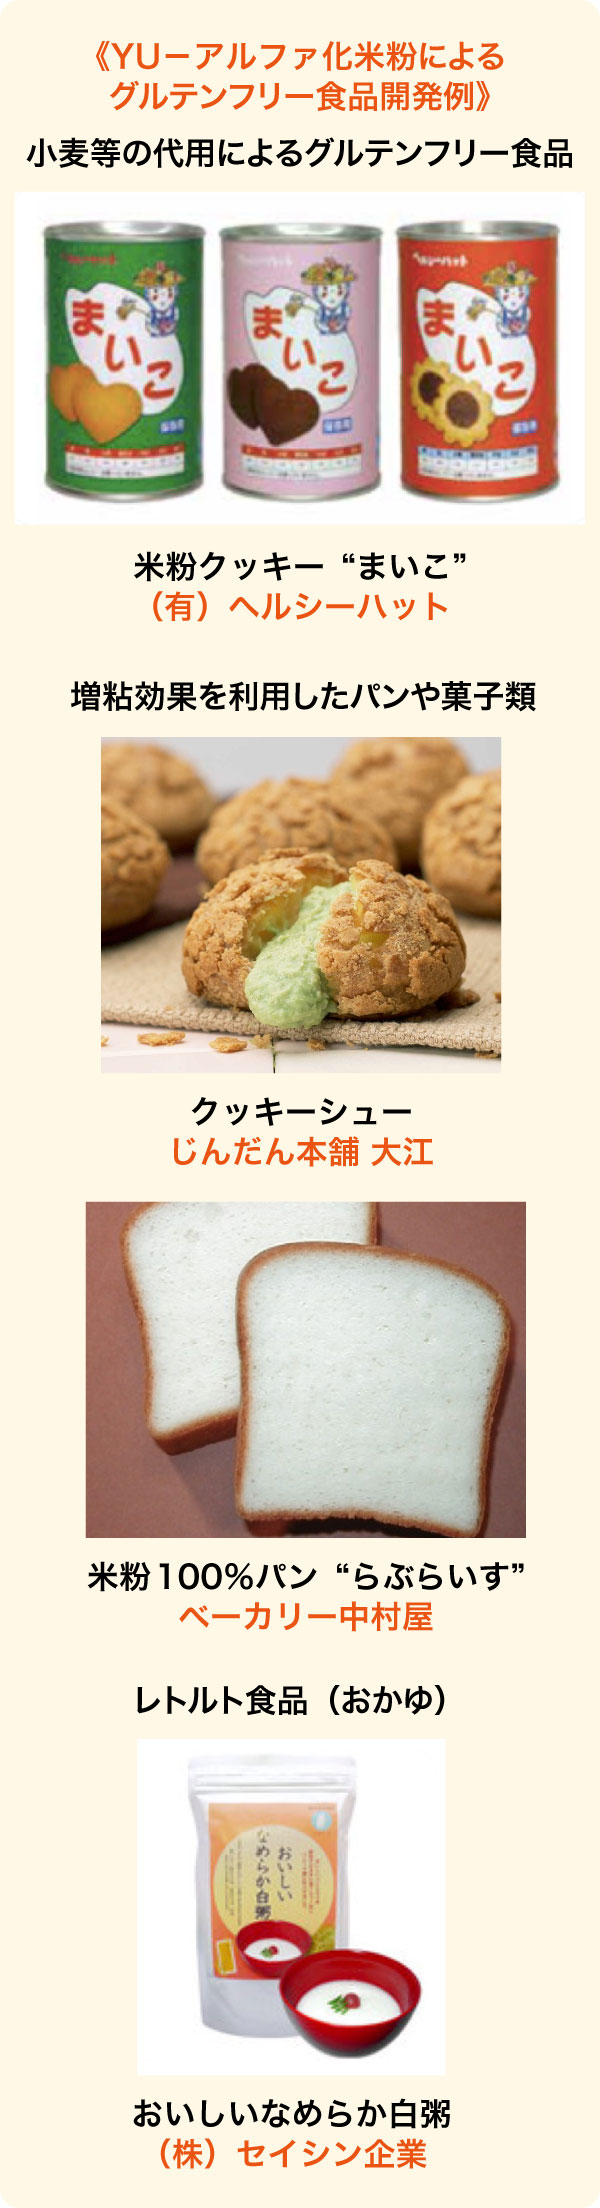 YU－アルファ化米粉によるグルテンフリー食品開発例